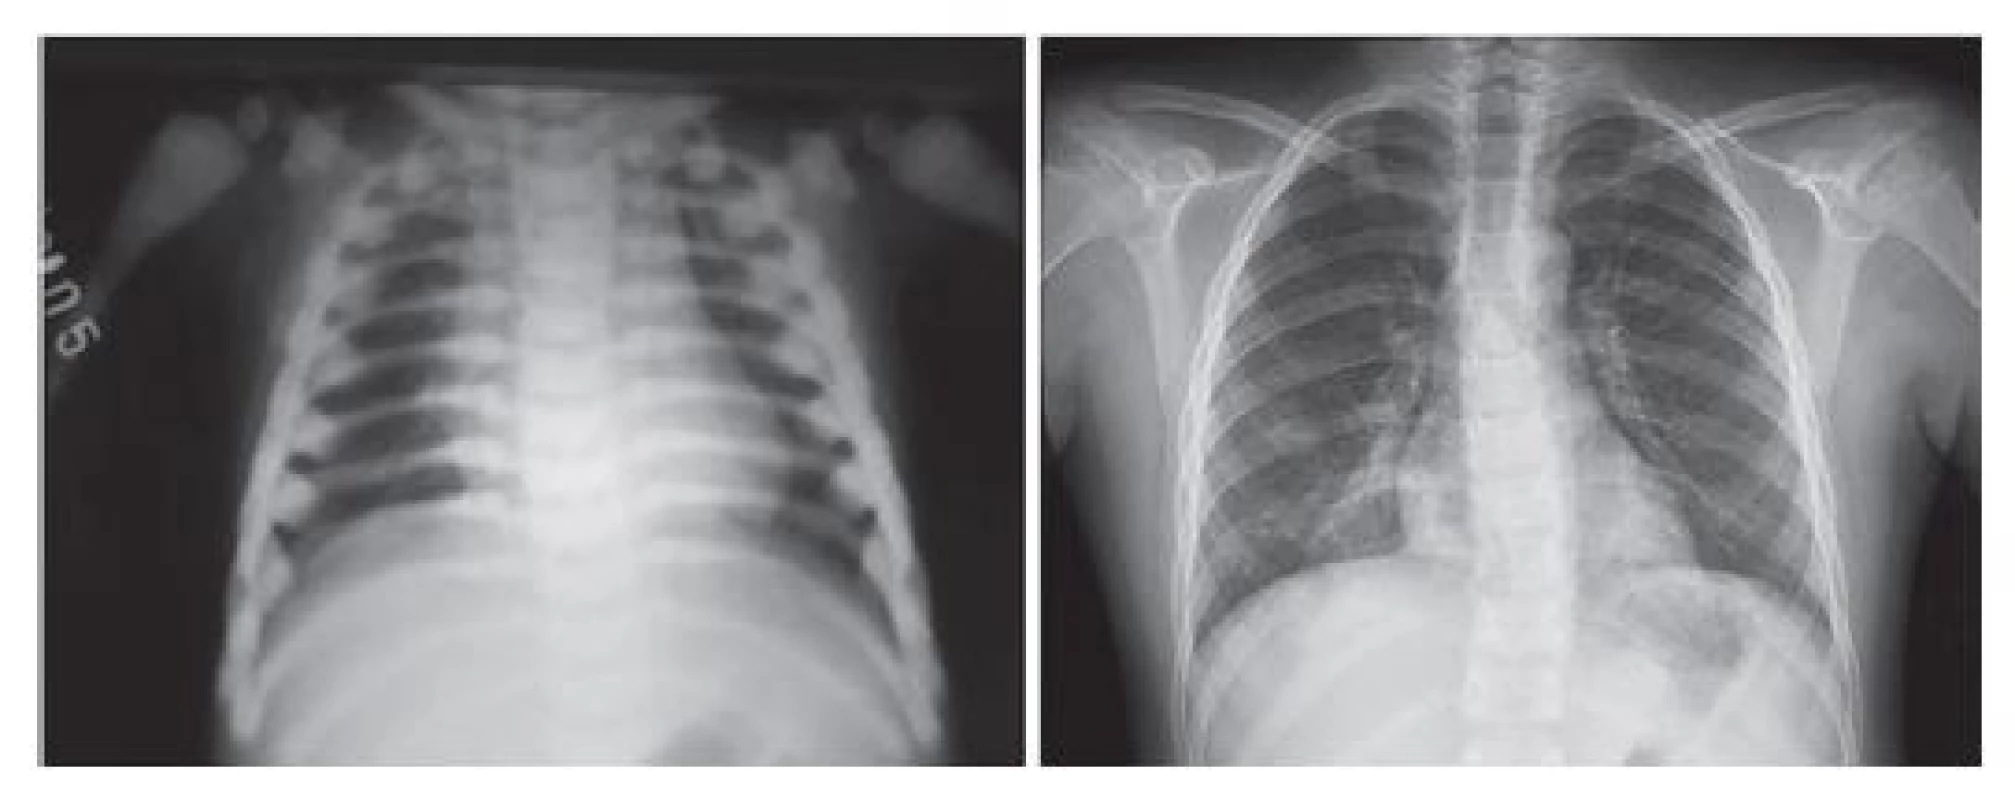 Srovnání rentgenového nálezu u chlapce s MIOP v době
stanovení diagnózy a 8 let po transplantaci